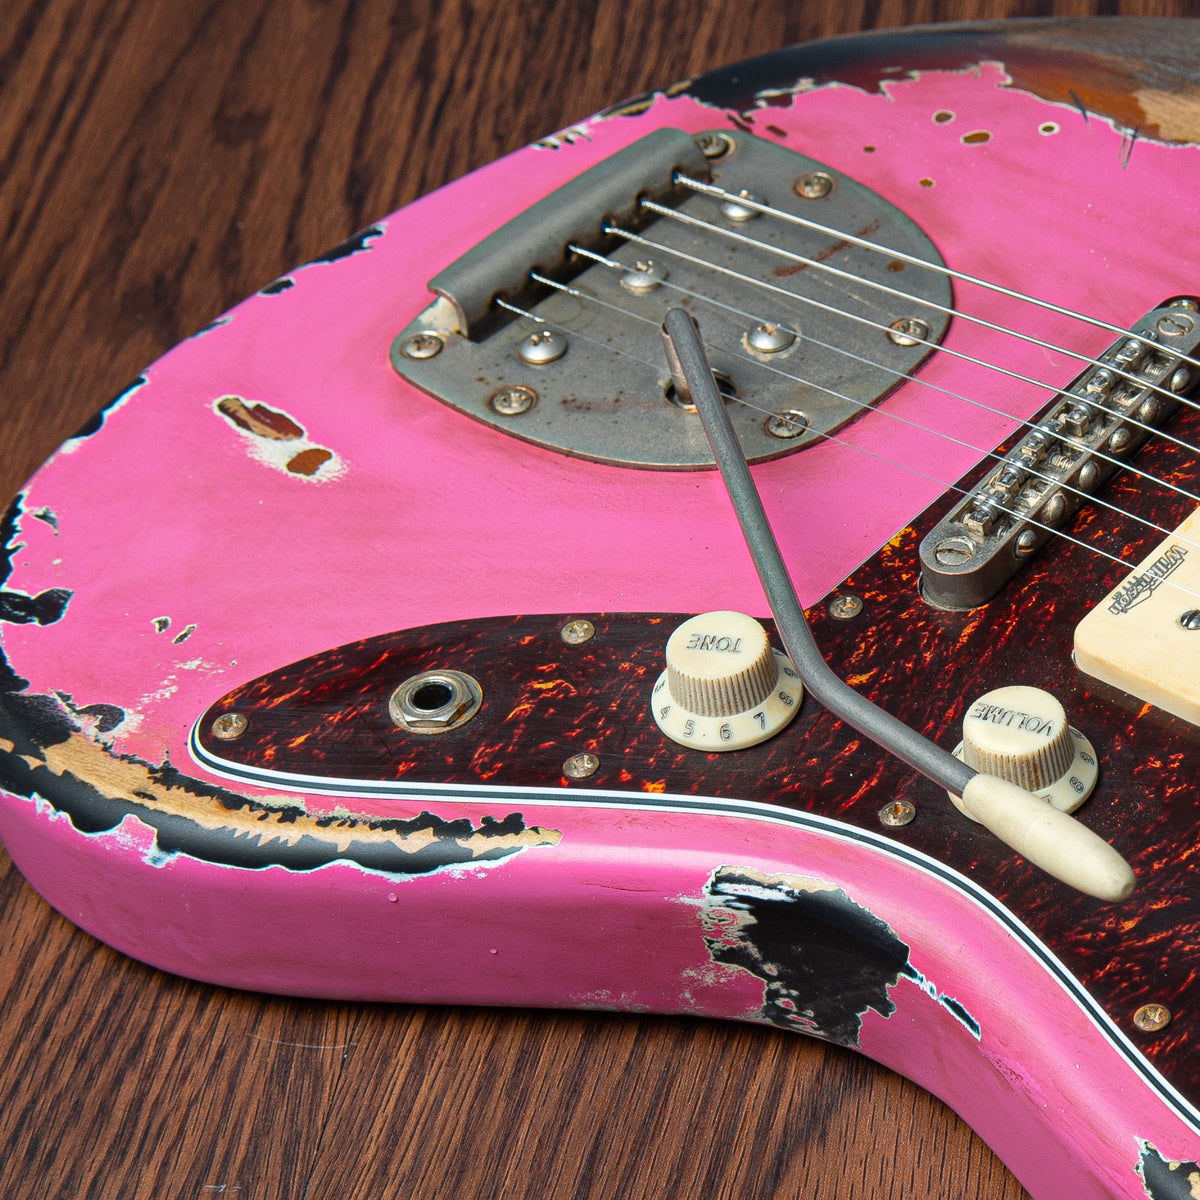 SOLD -  Vintage V65 ProShop Custom-Build ~ Heavy Distress ~ Bubblegum Pink Over Sunburst, Electric Guitars for sale at Richards Guitars.